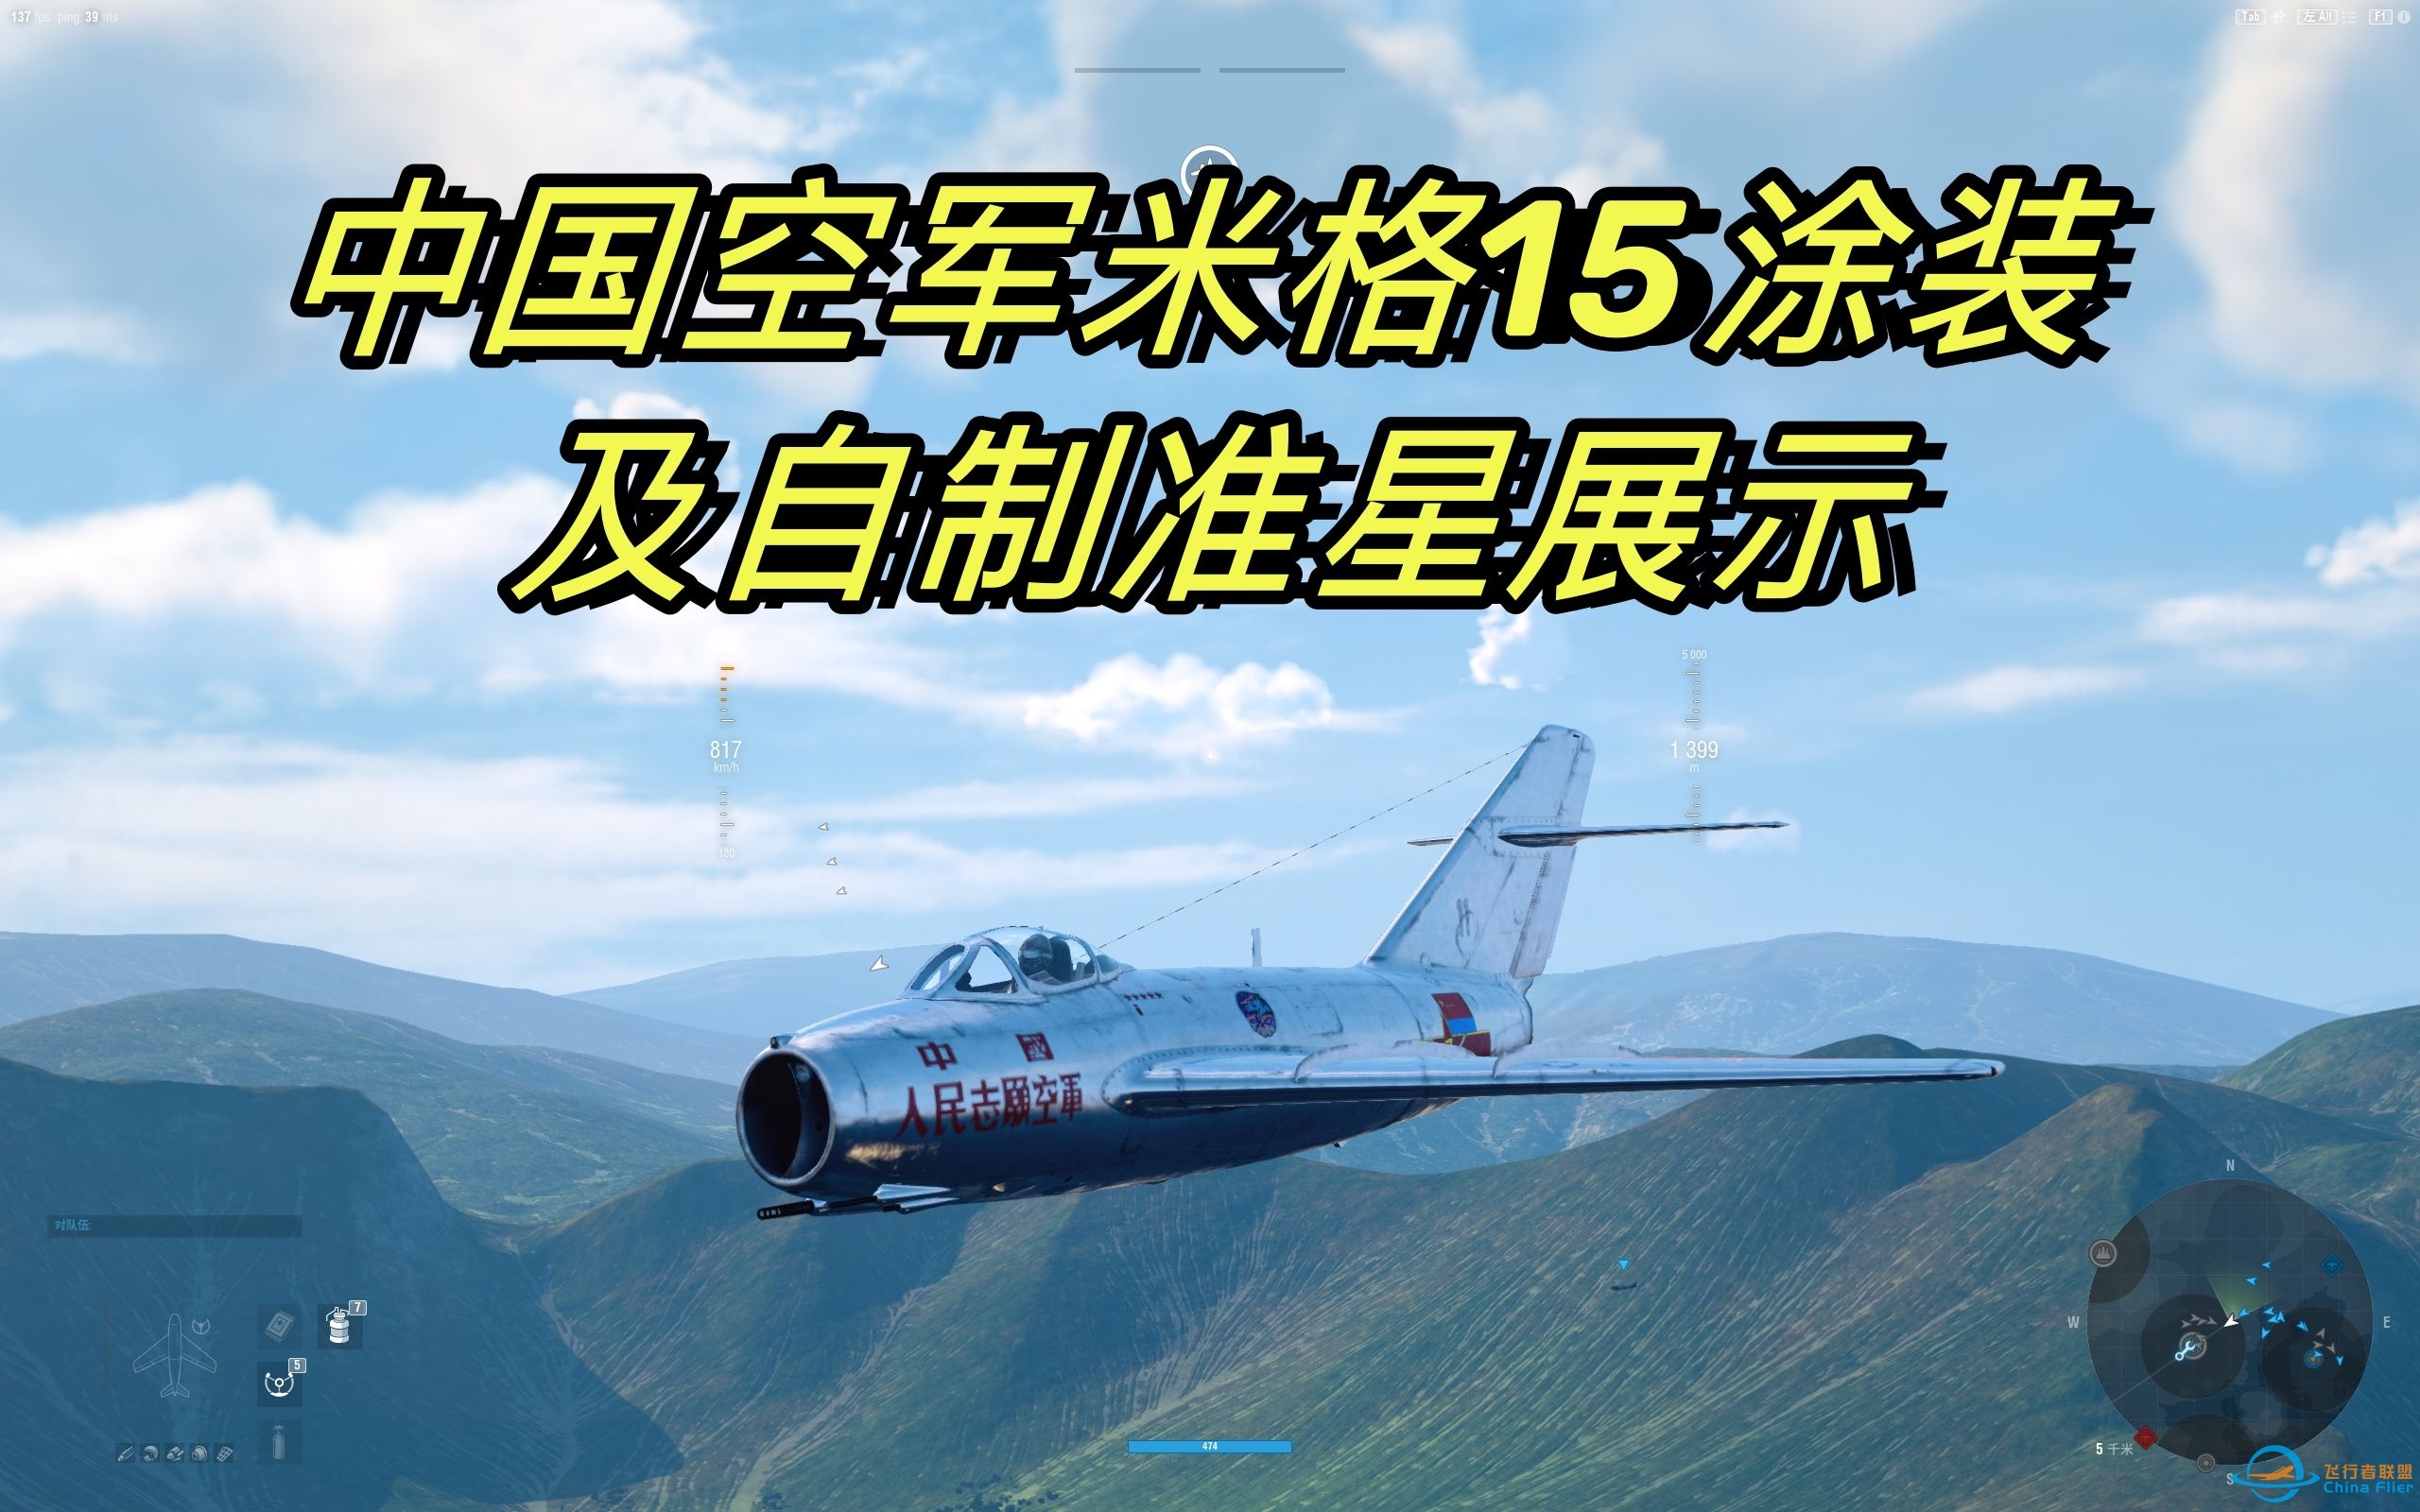 [战机世界]中国空军米格15涂装及自制仿喷火战斗机准星展示-820 